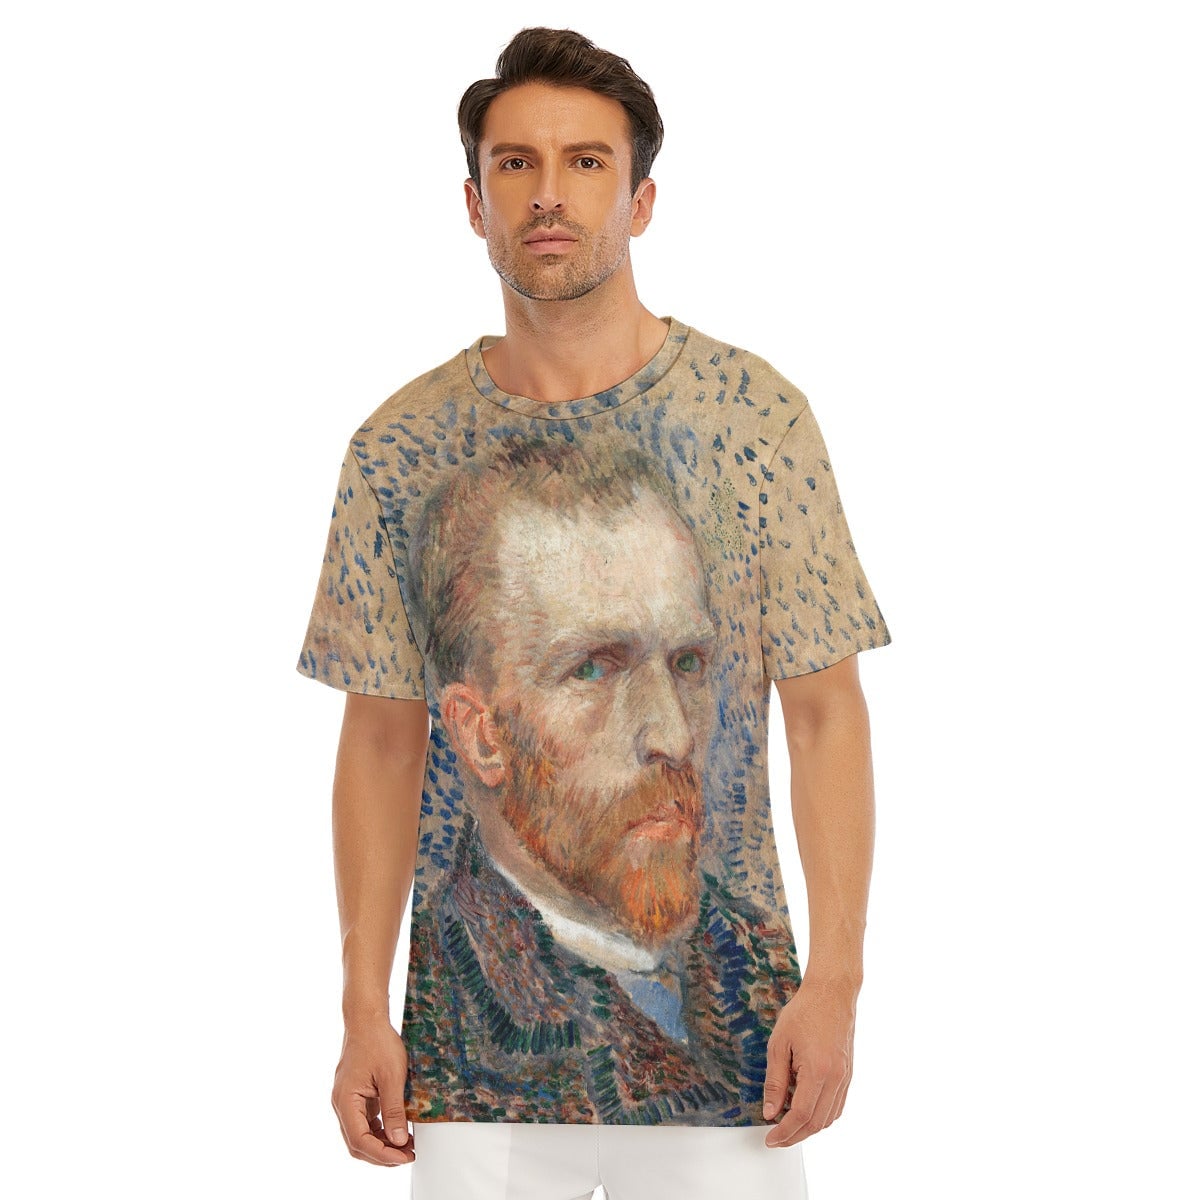 Self-Portrait 1887 Vincent van Gogh T-Shirt